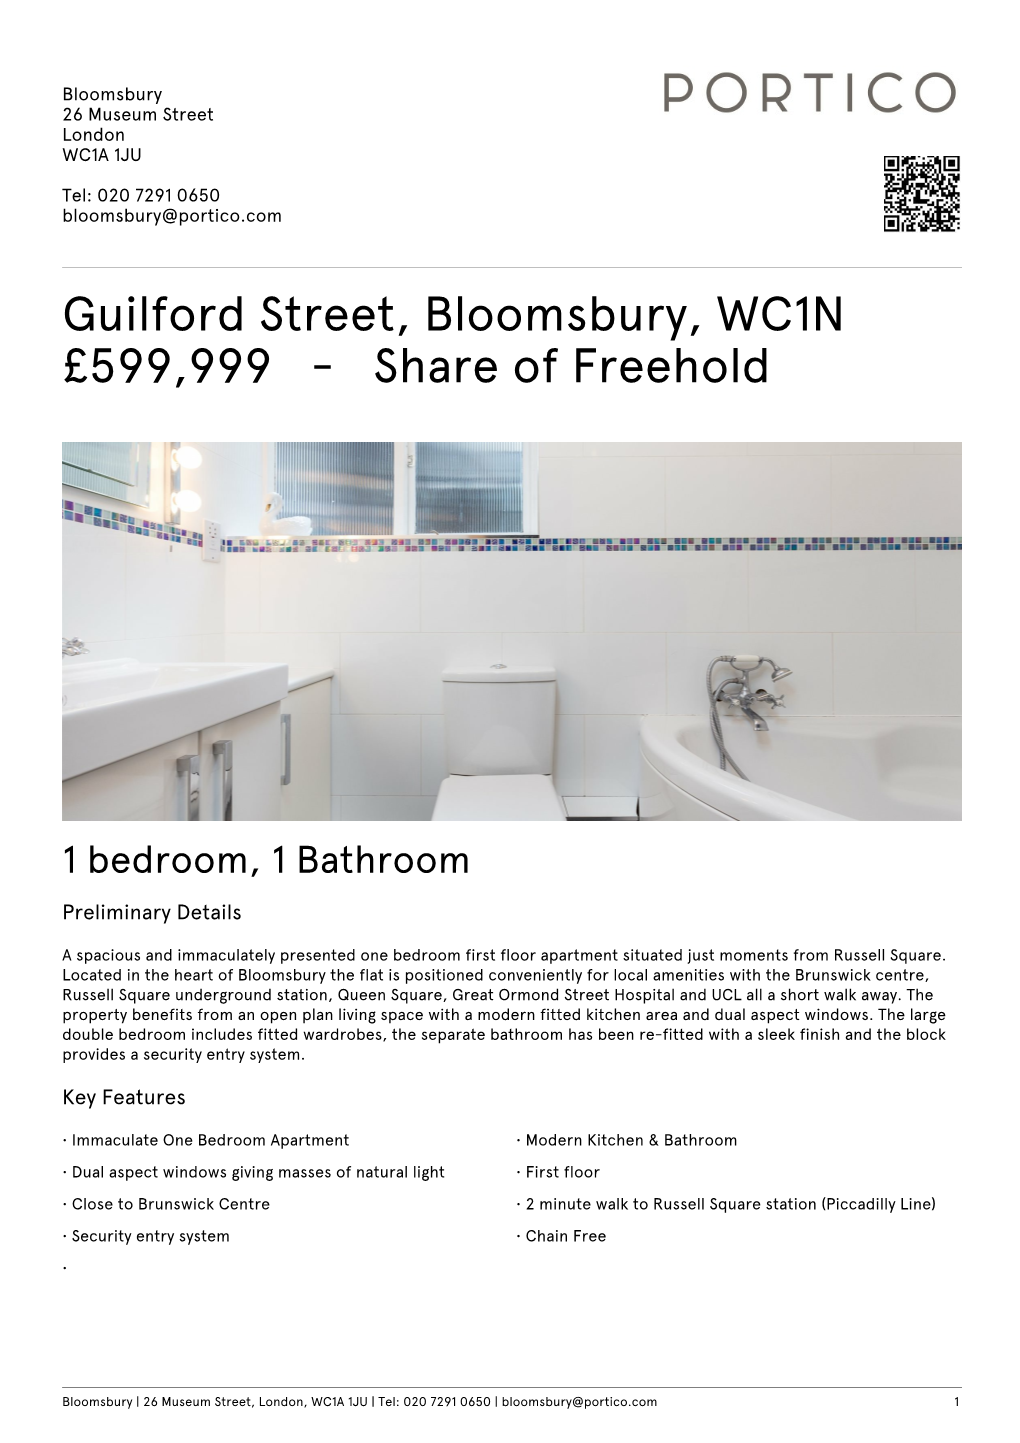 Guilford Street, Bloomsbury, WC1N £599999